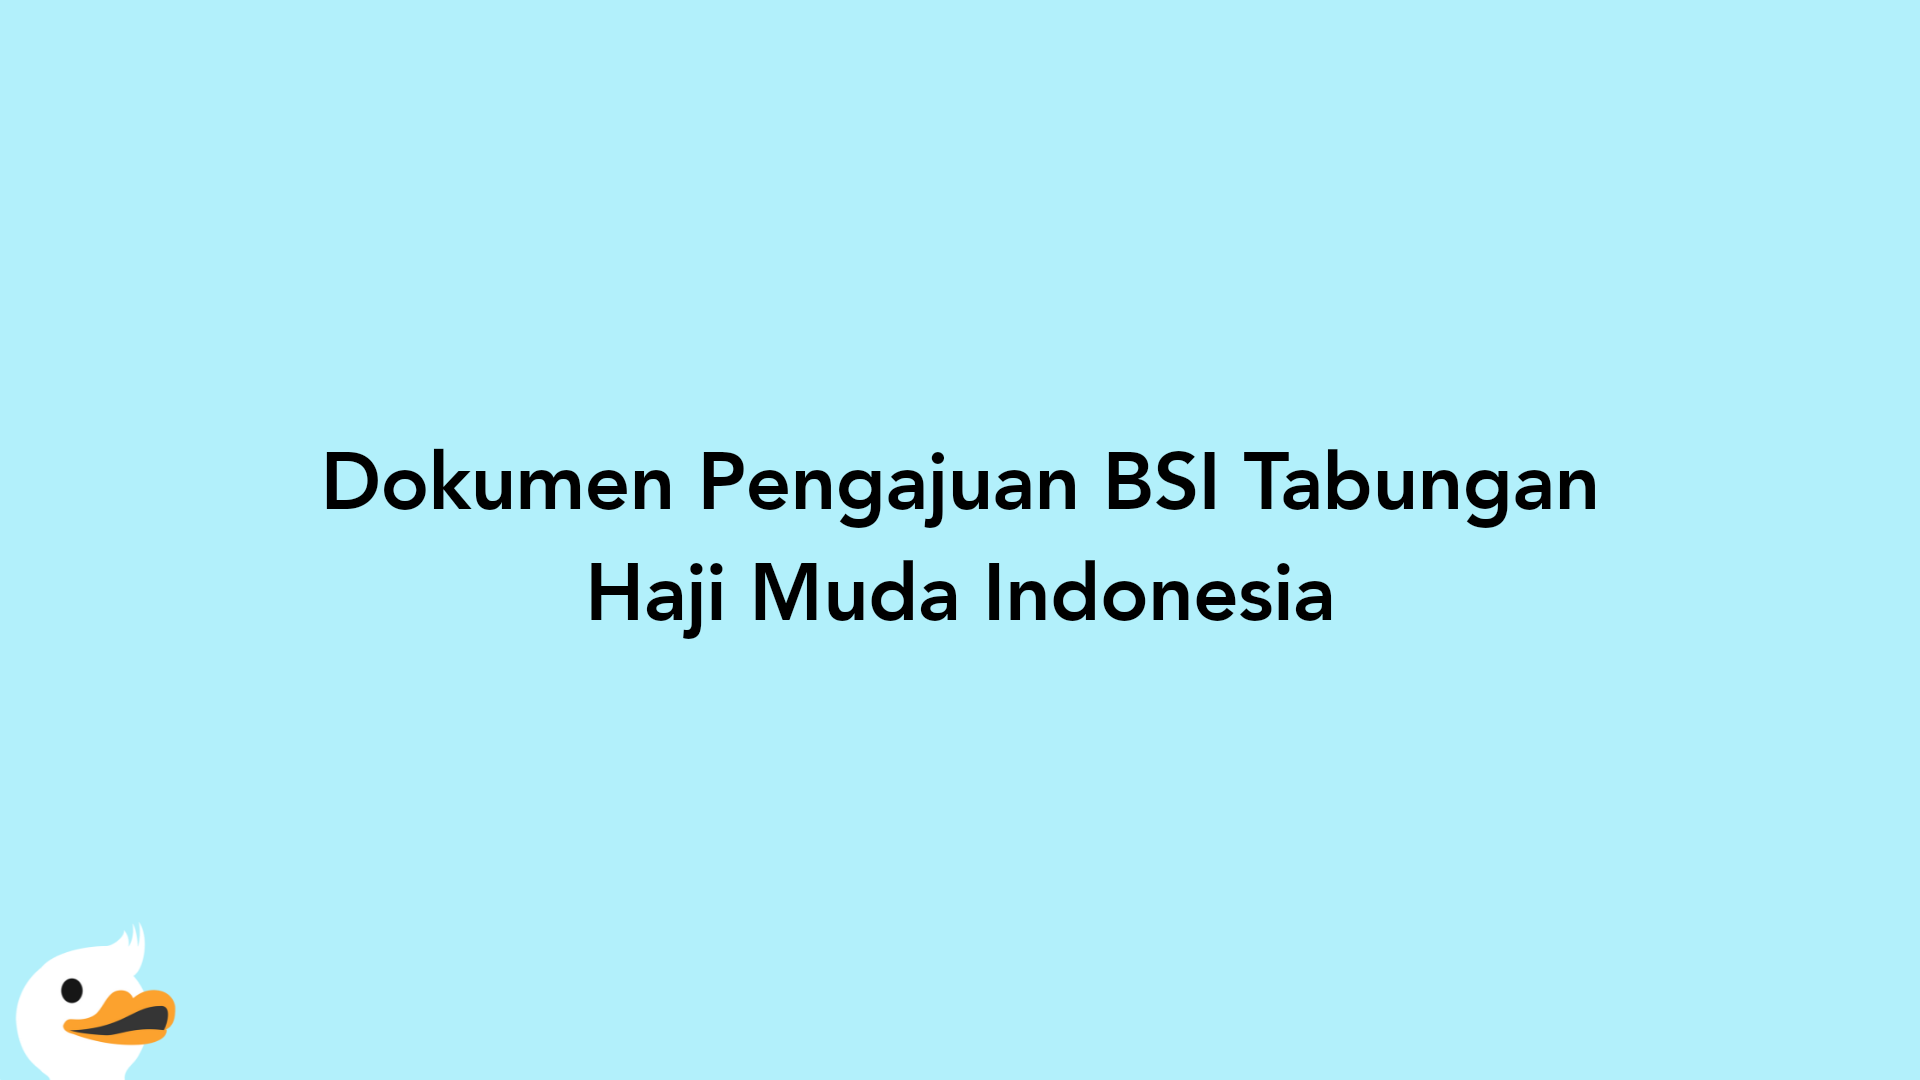 Dokumen Pengajuan BSI Tabungan Haji Muda Indonesia